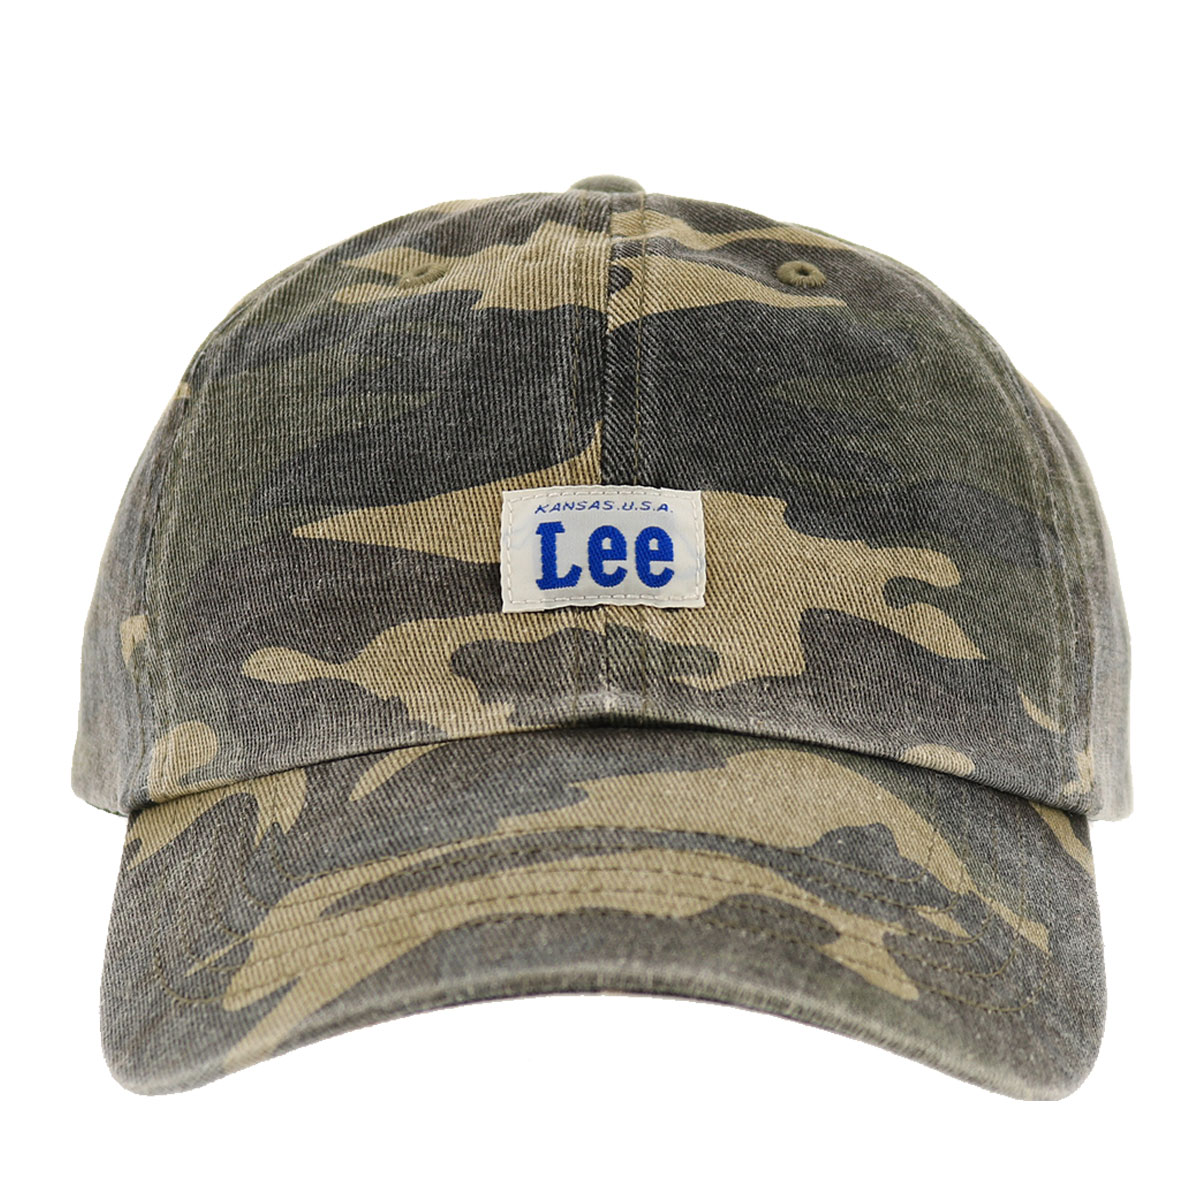 リー キャップ コットン フリーサイズ サイズ調整可能 帽子 ロー